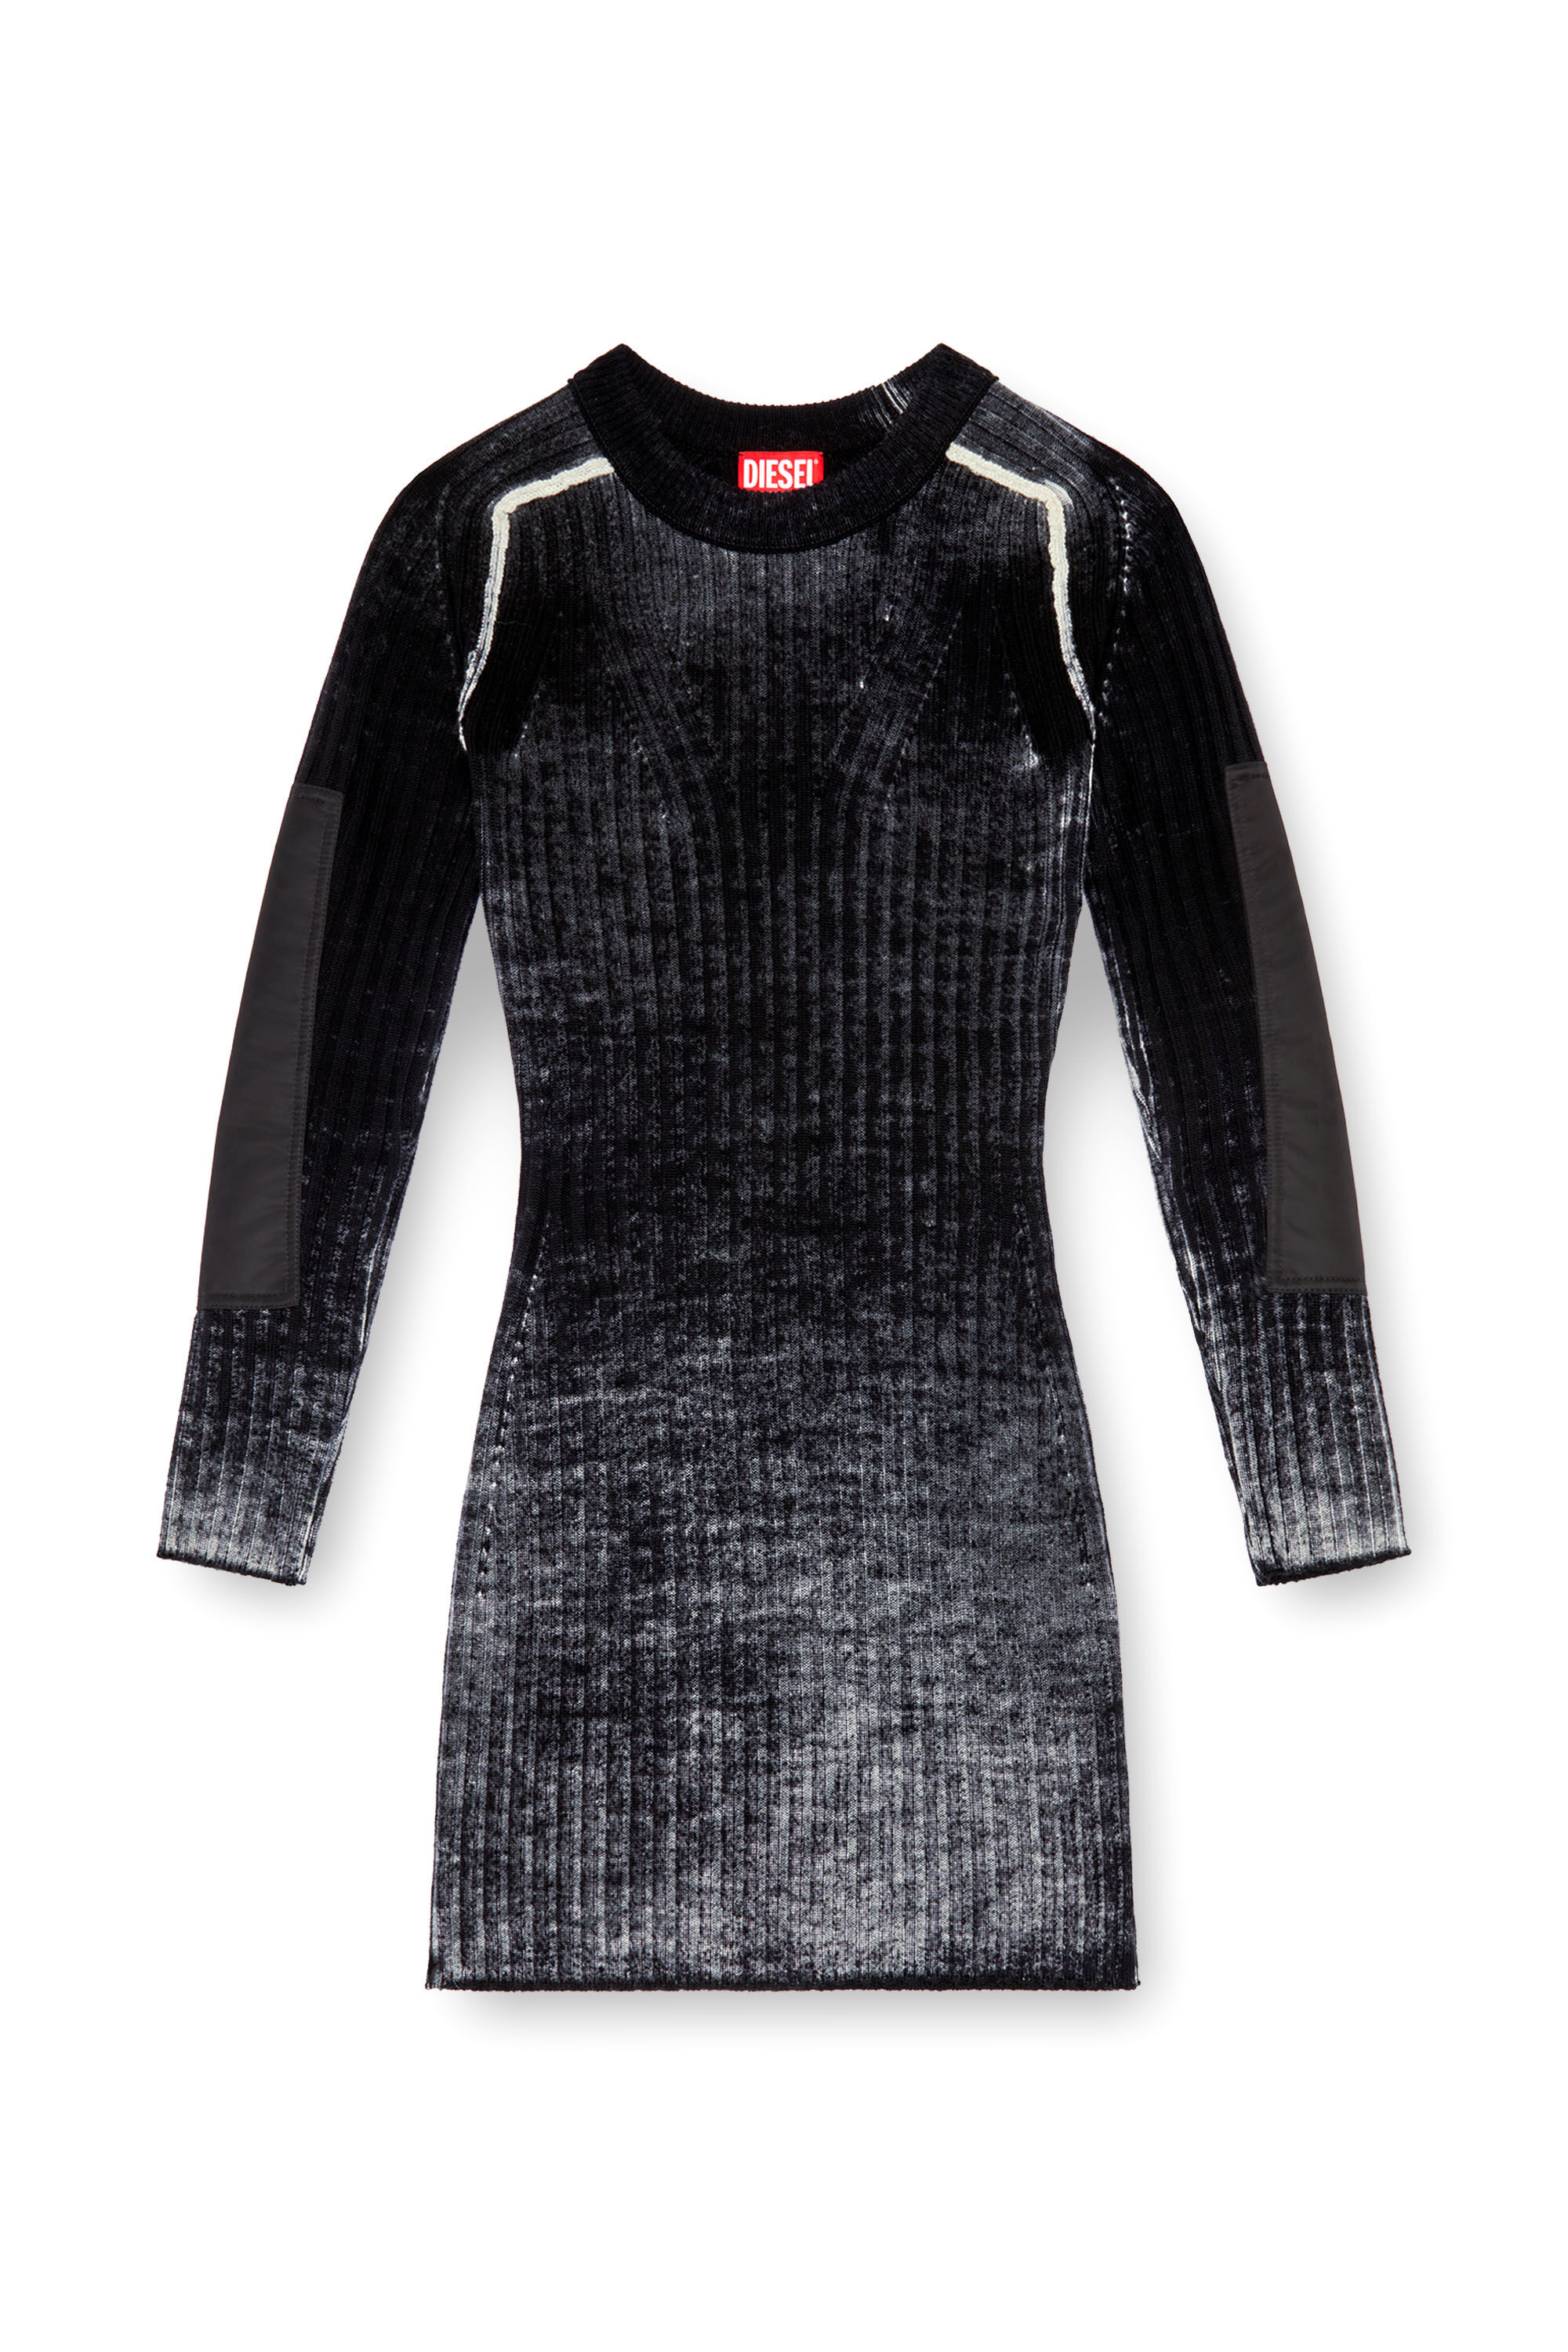 Diesel - M-ARTISTA, Woman Short dress in treated wool knit in Black - Image 2